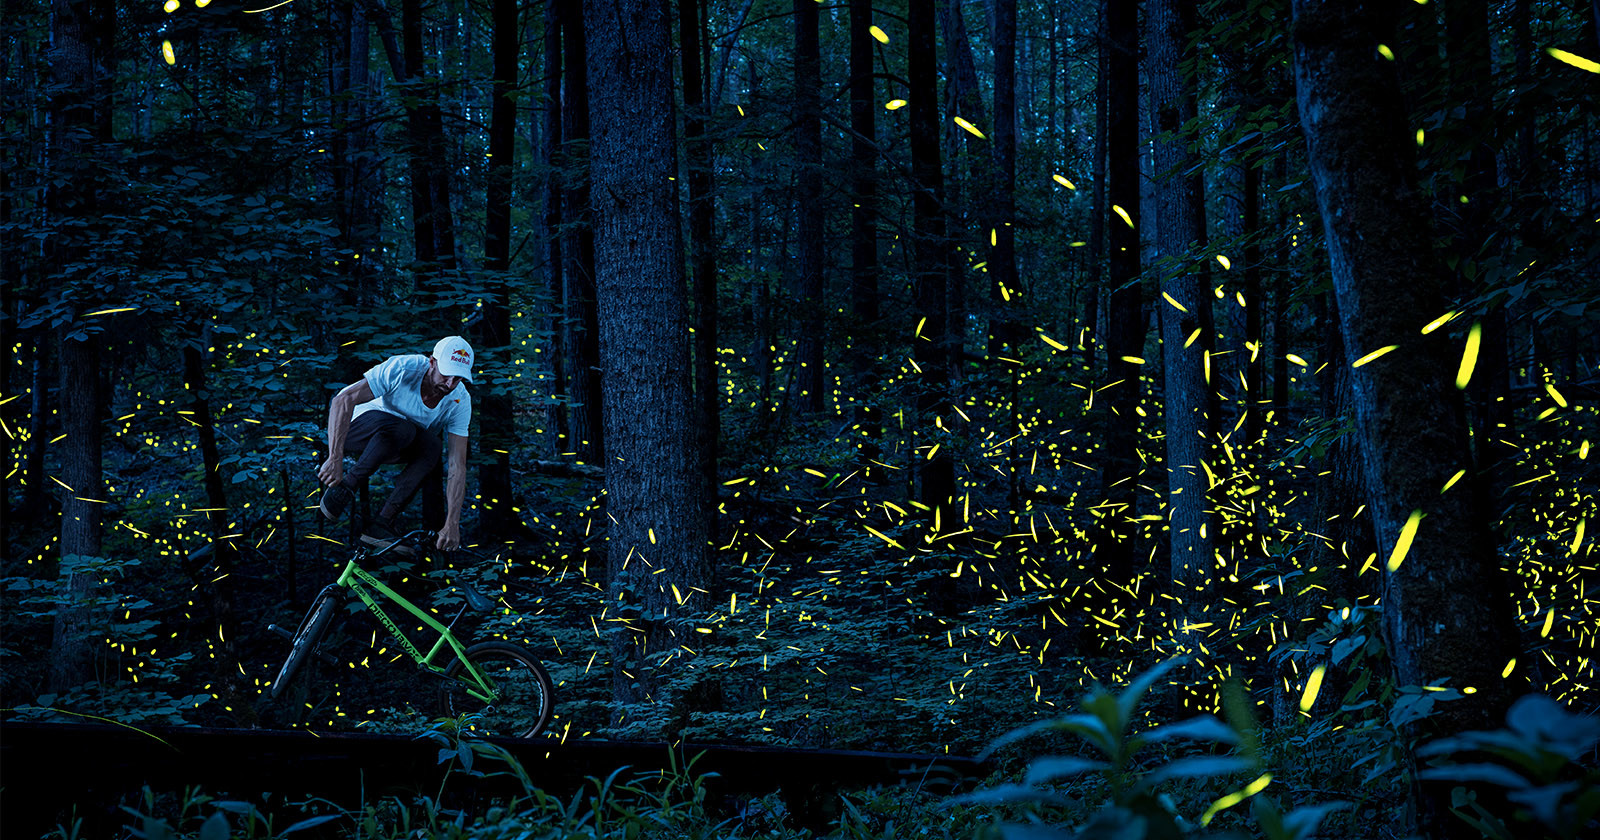  bmx biker captured among glowing clouds fireflies 